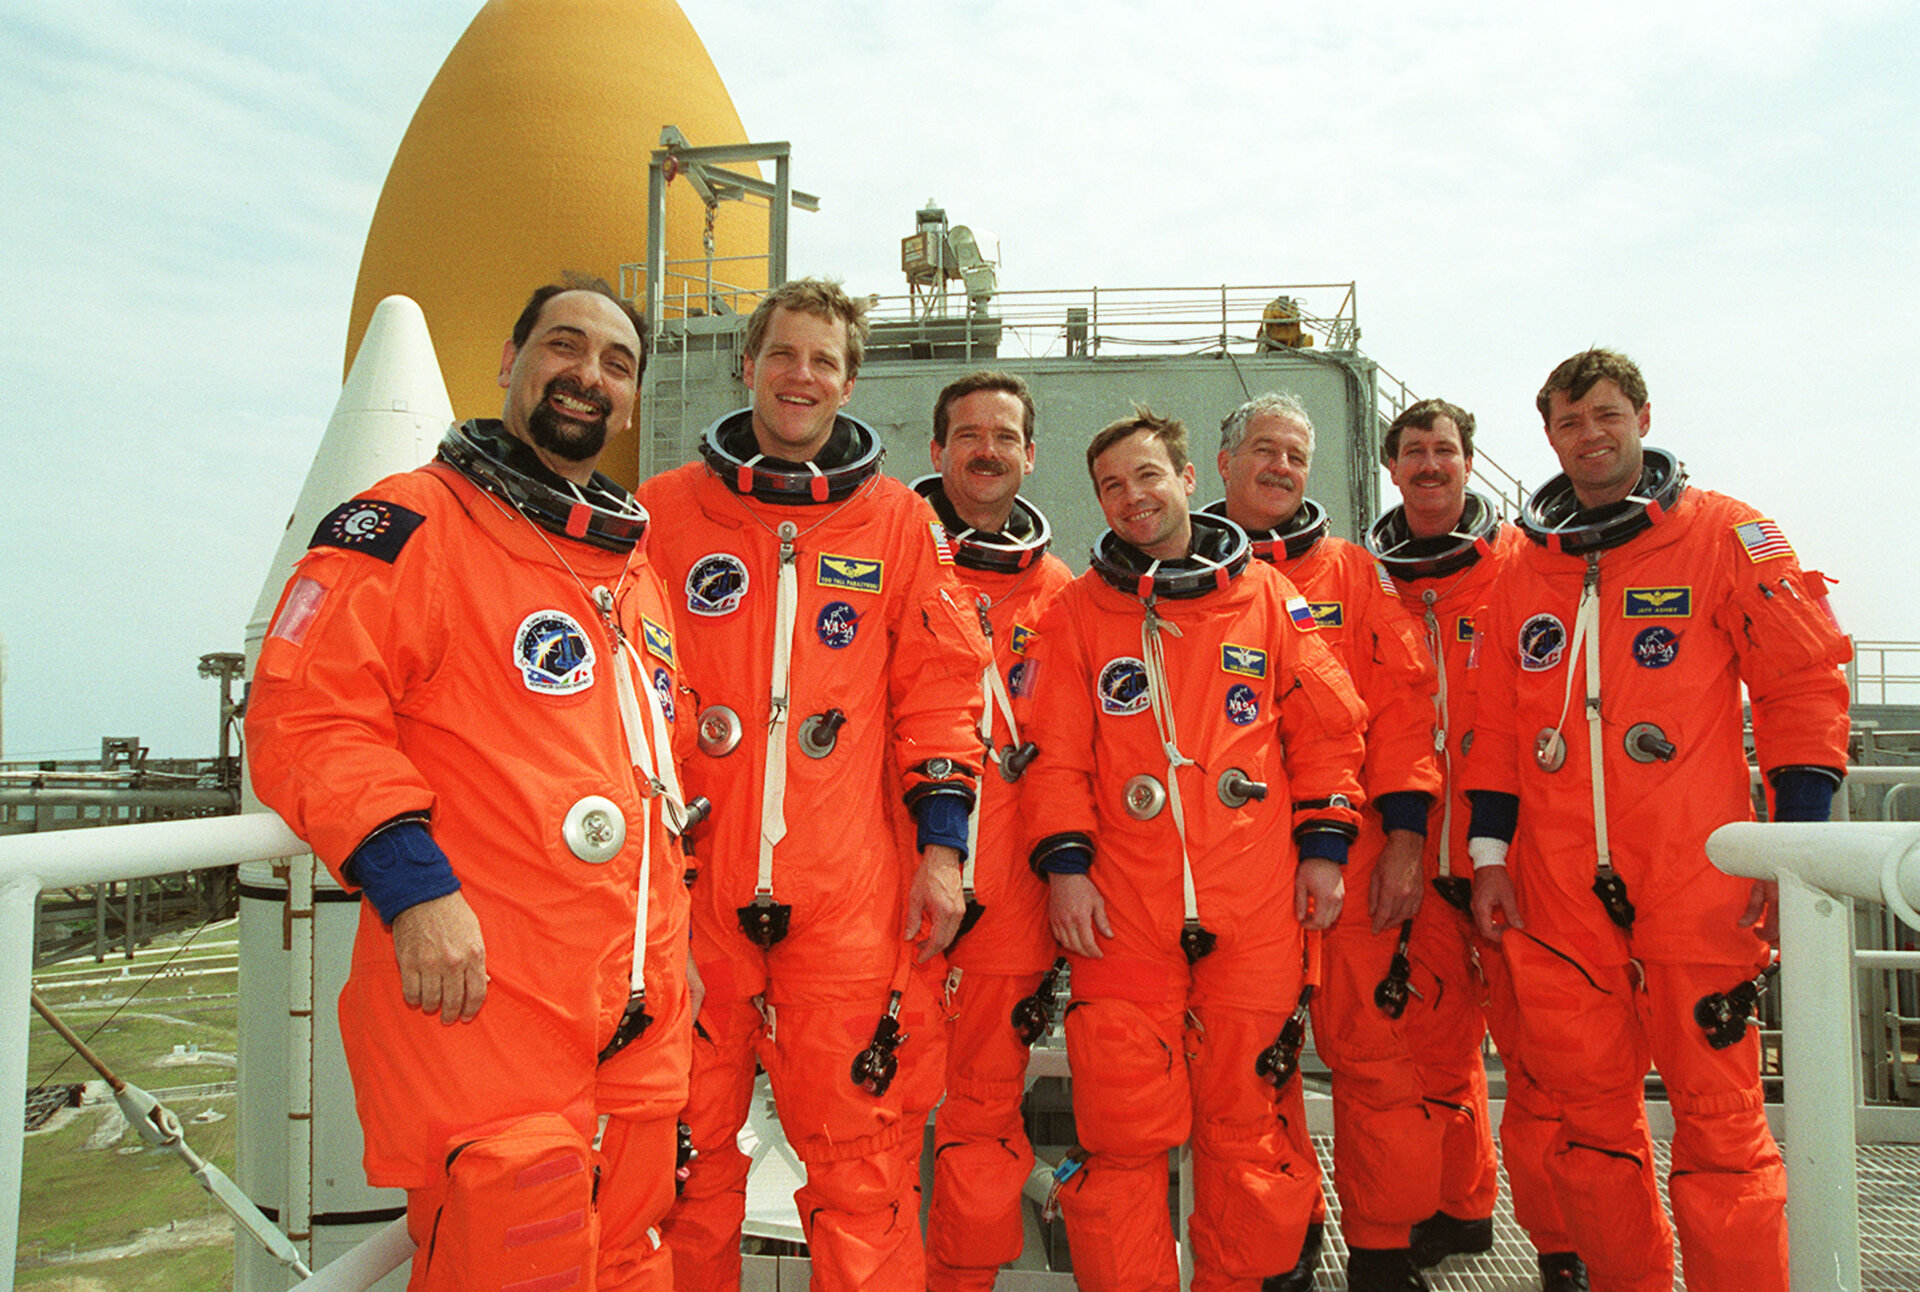 Crew STS-100